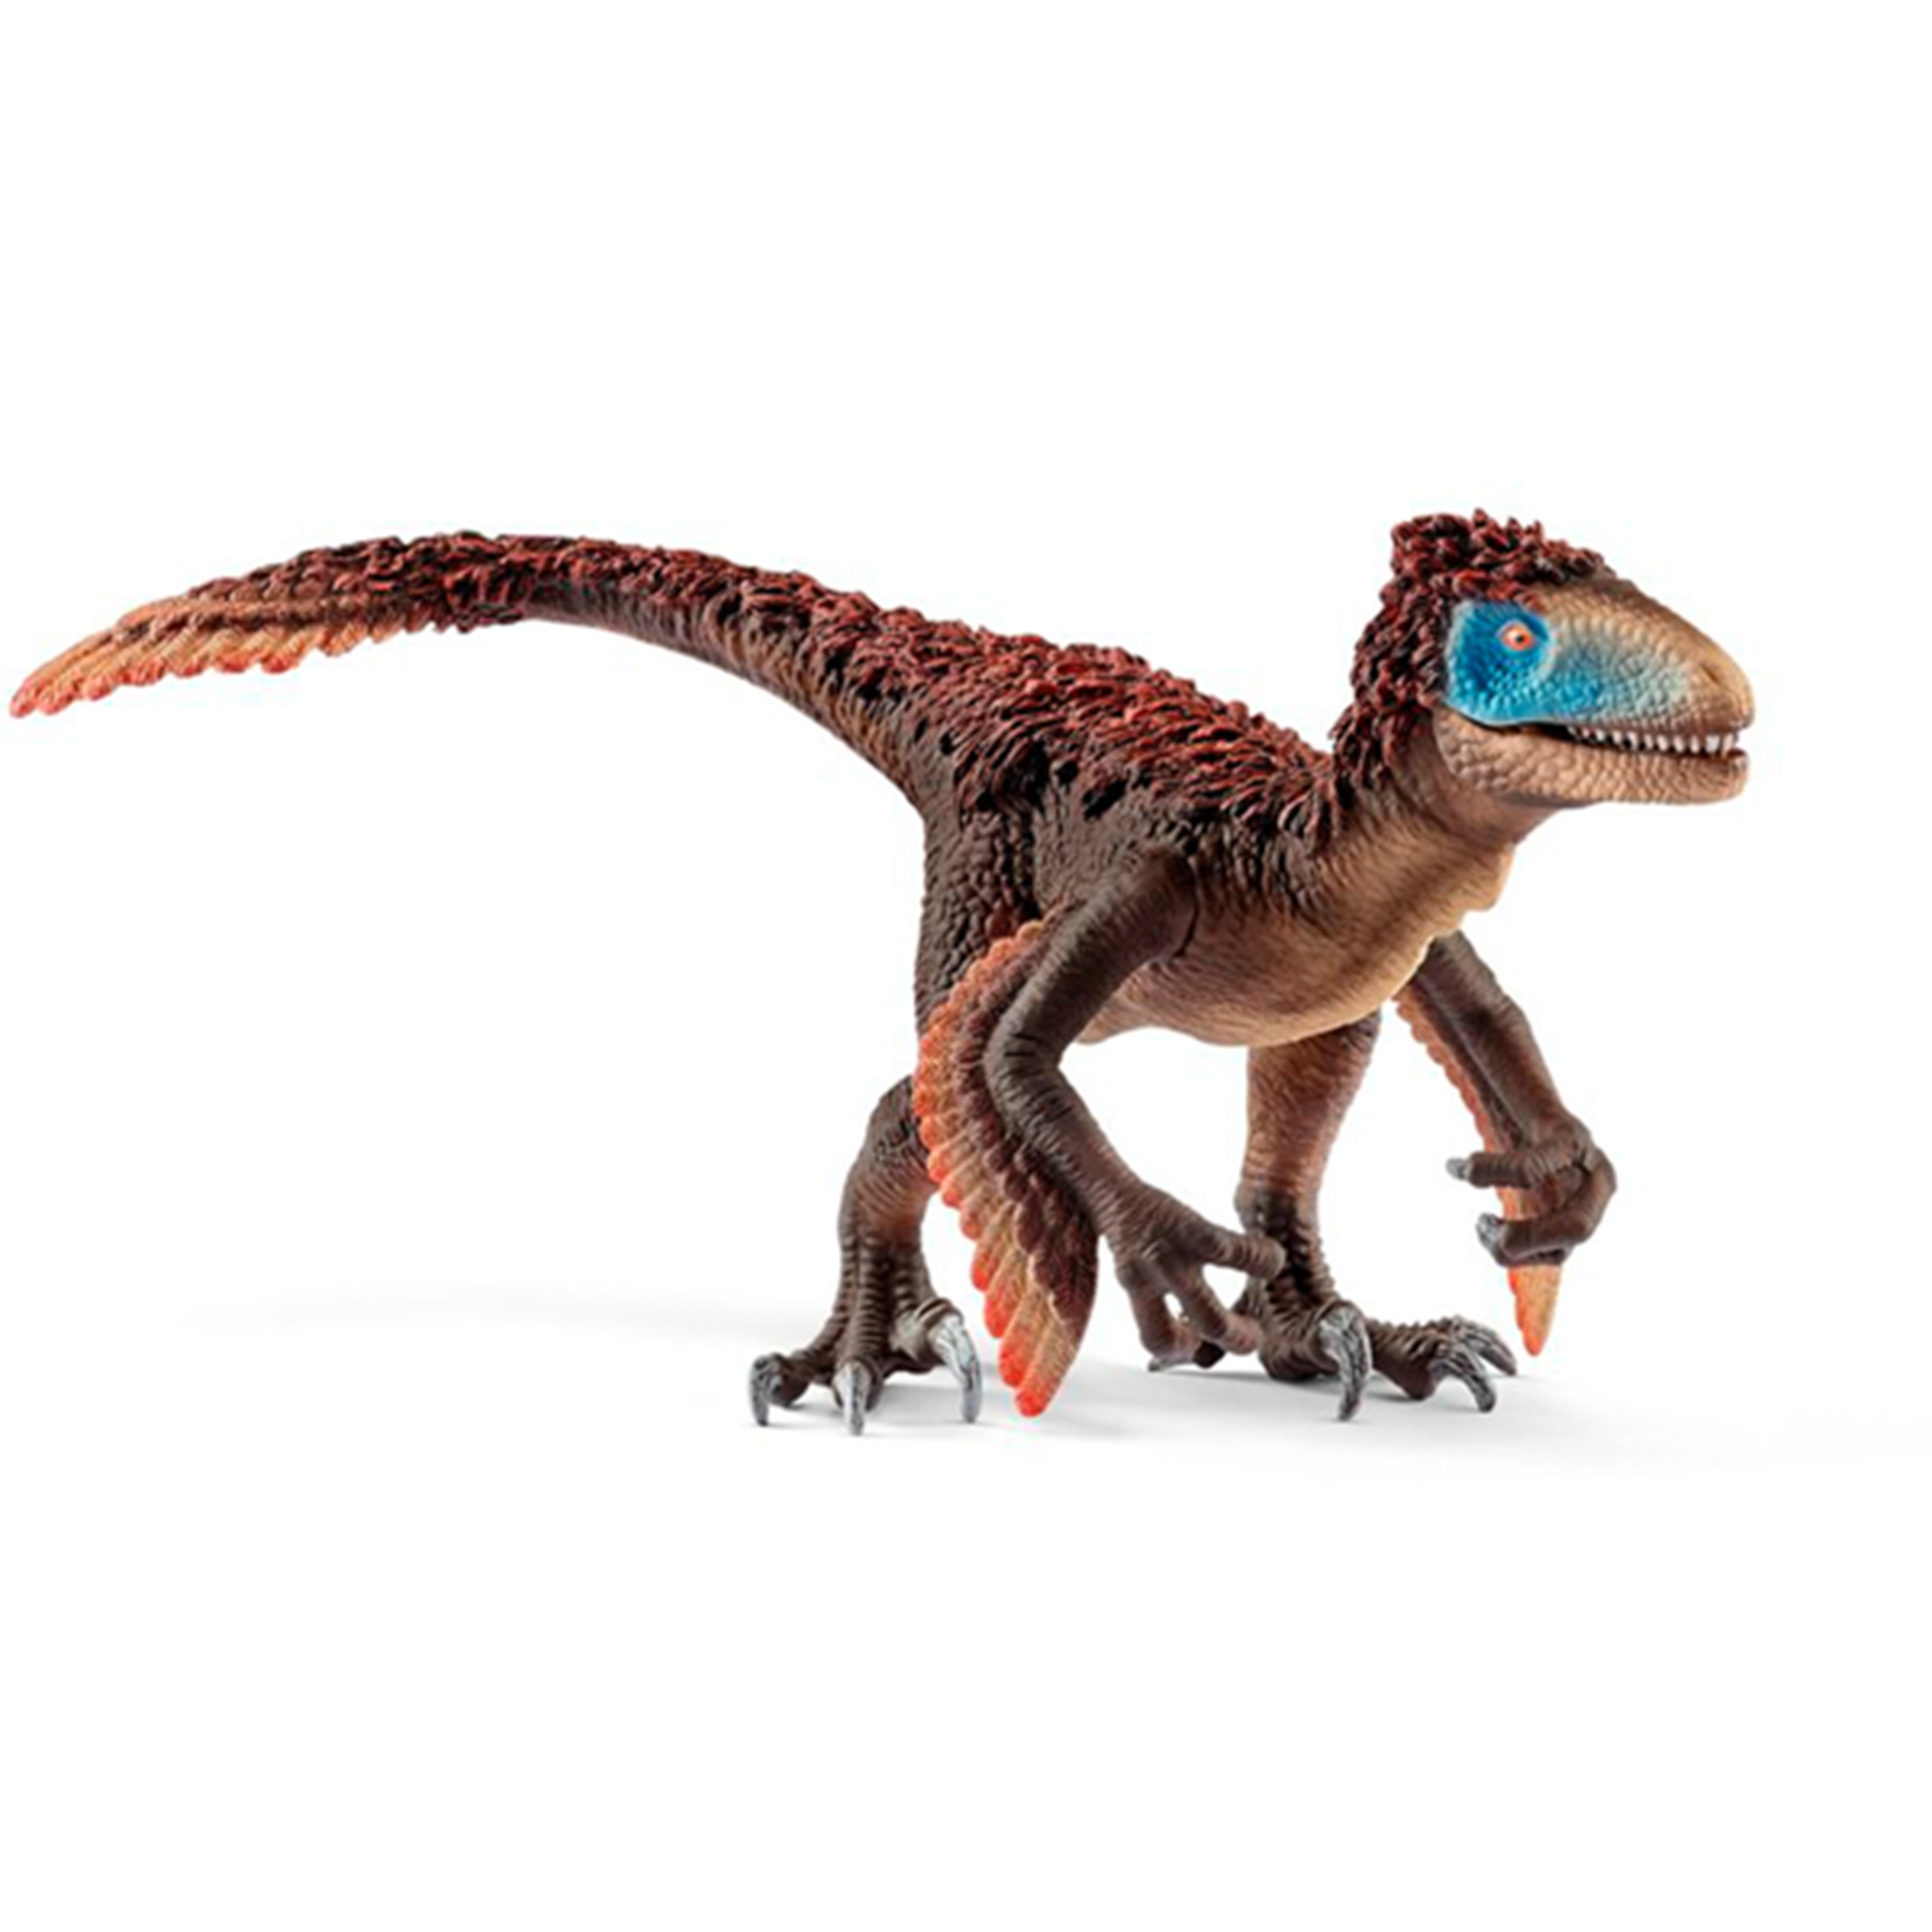 Schleich Dinosaurs Utahraptor